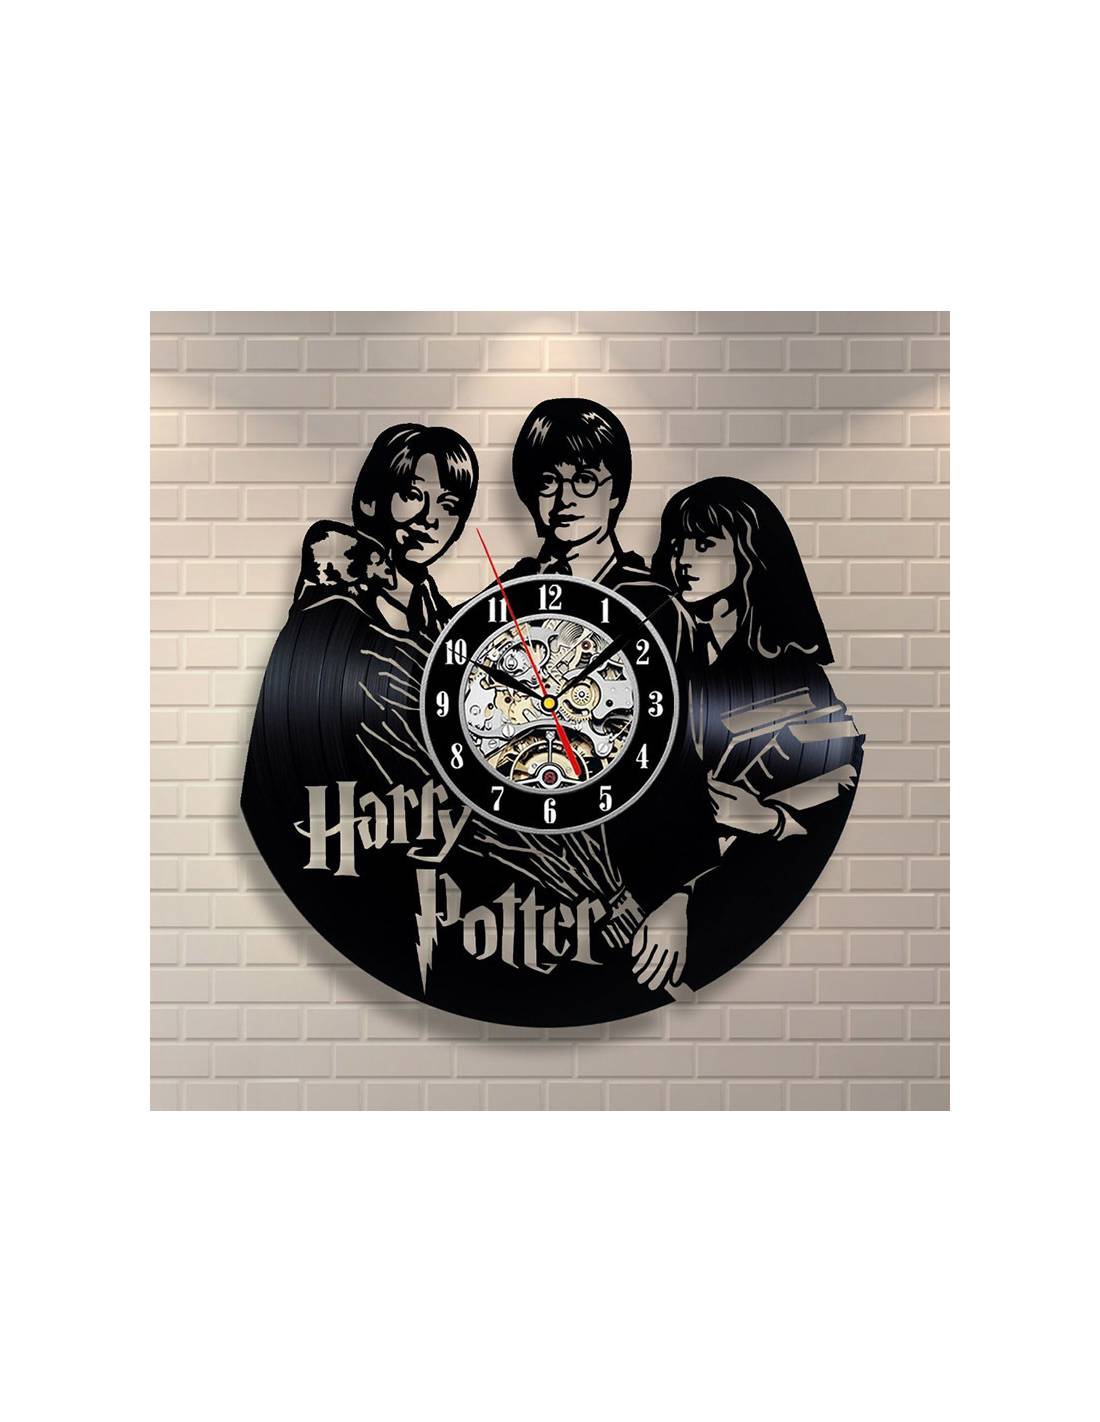 Harry Potter 01 - Horloge disque vinyle déco